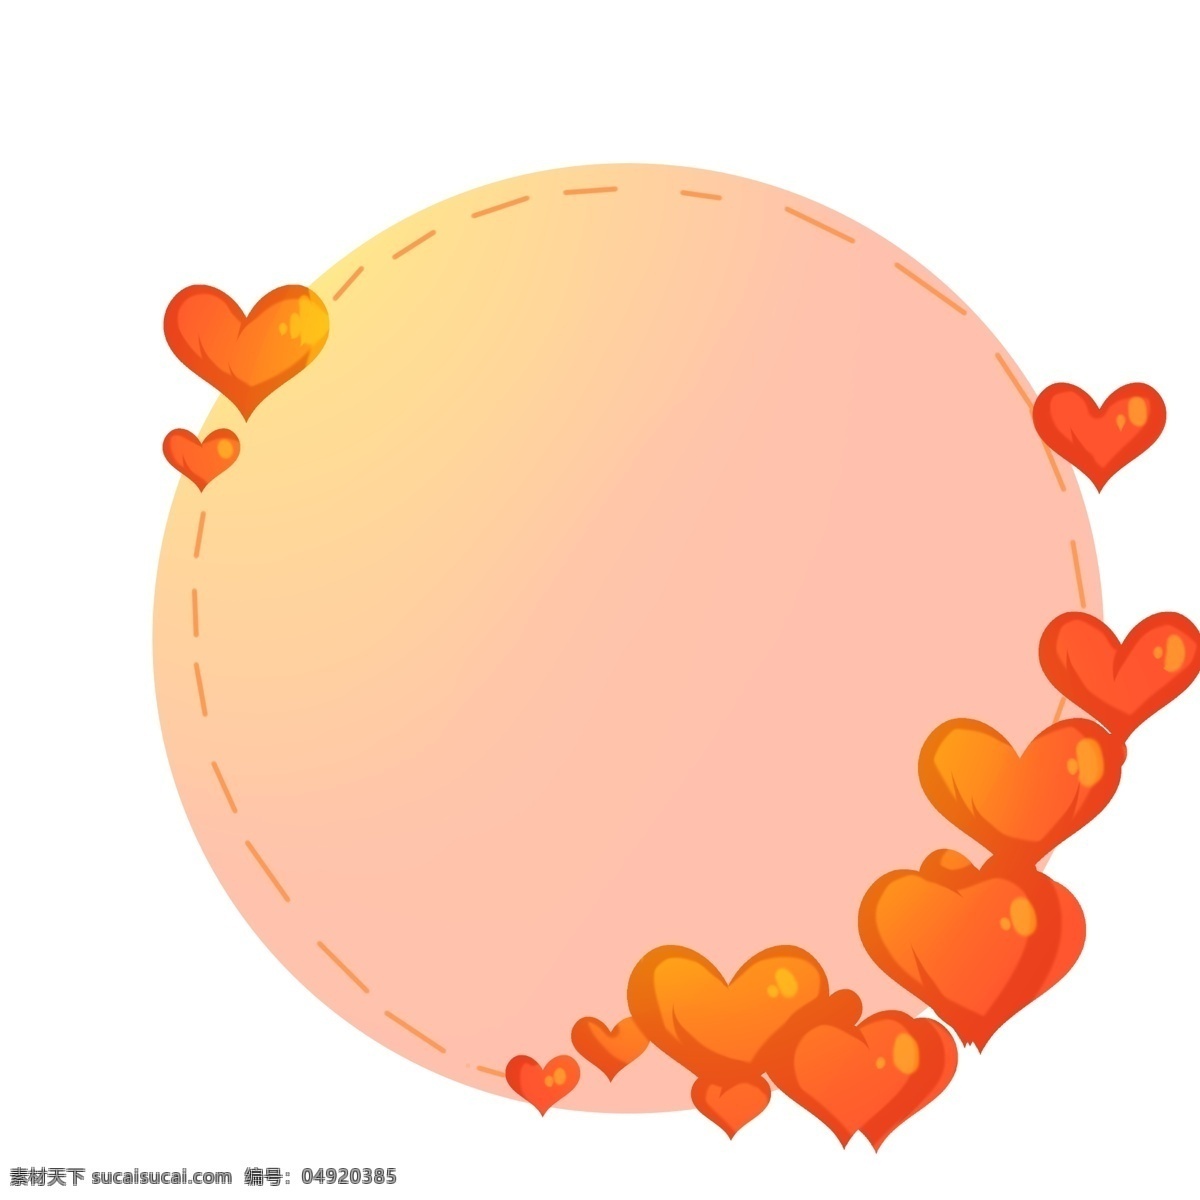 手绘 红心 爱情 边框 红色的爱心 卡通插画 手绘插画 爱情边框 圆圆的边框 粉色的边框 漂亮的边框